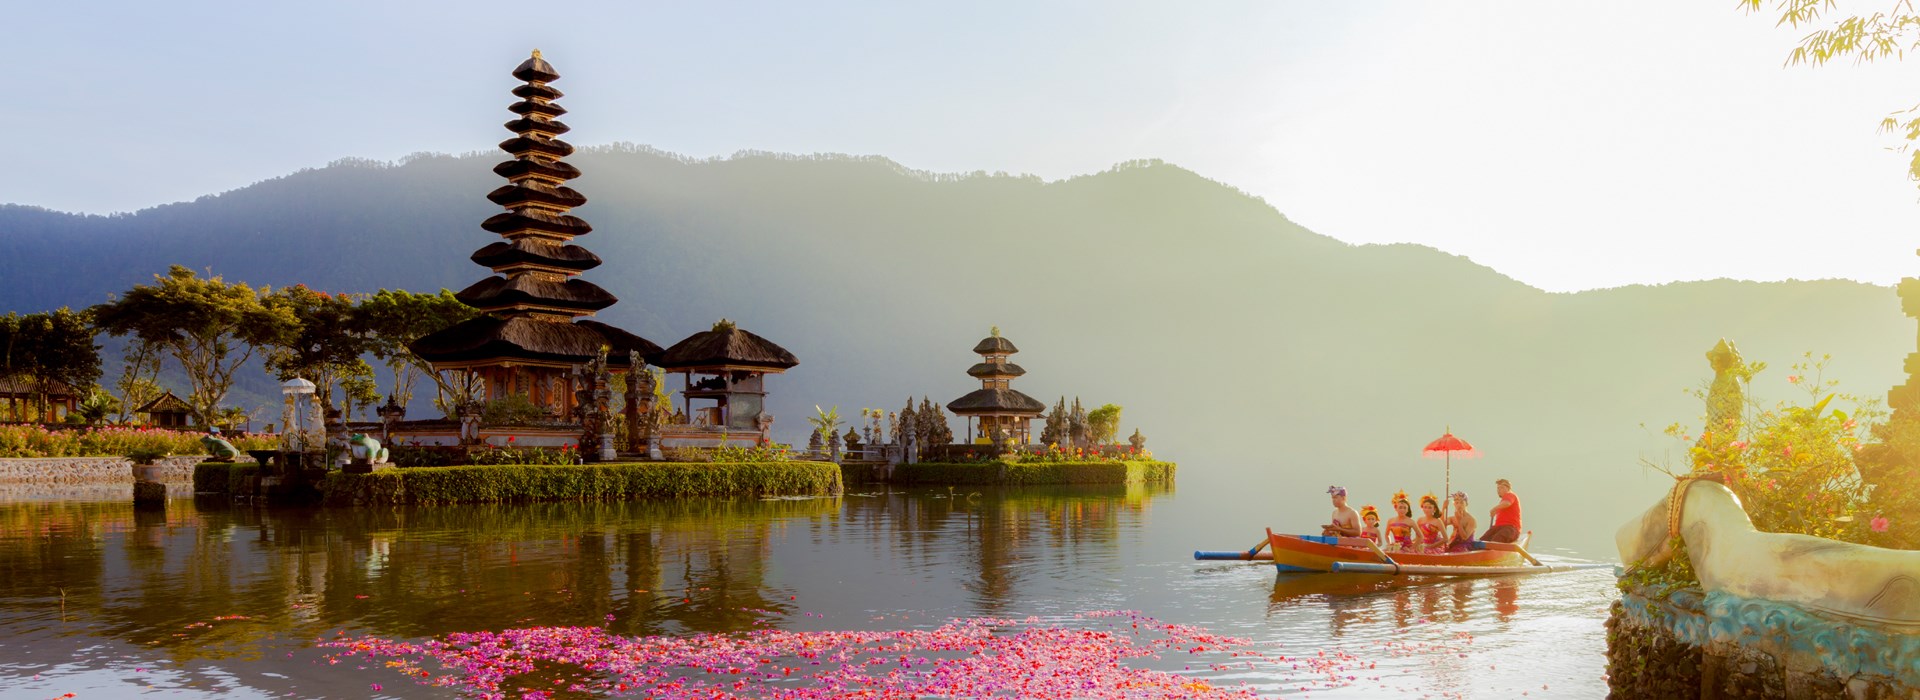 Visiter Le Lac Bratan - Indonesie